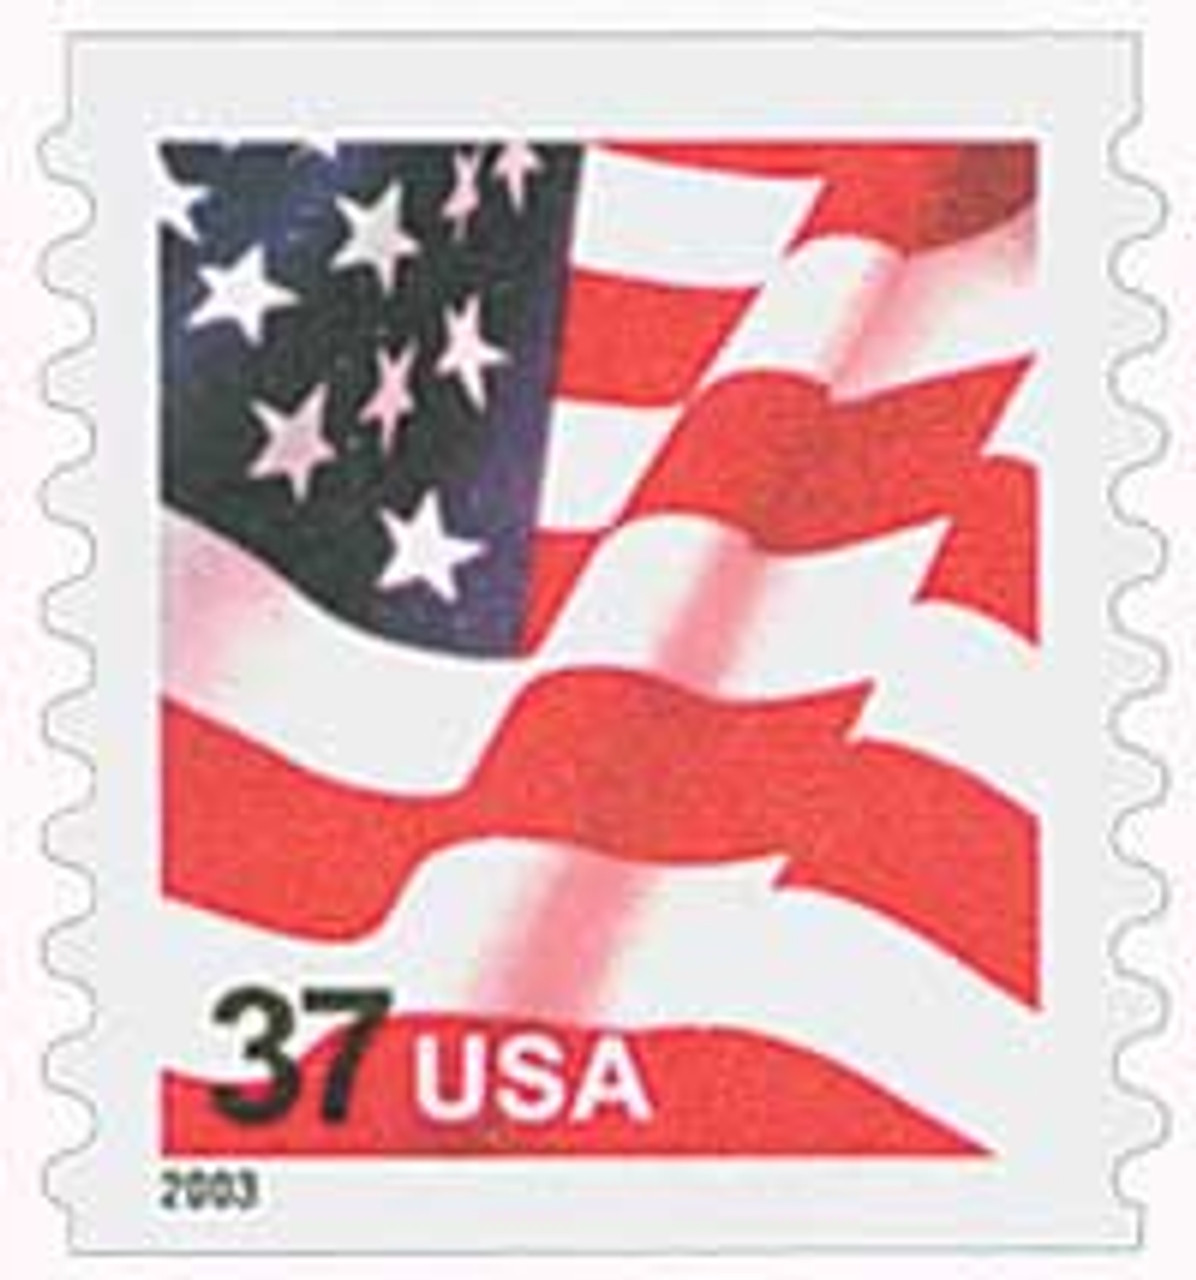 File:American Flag 5c 1963 issue U.S. stamp.jpg - Wikipedia